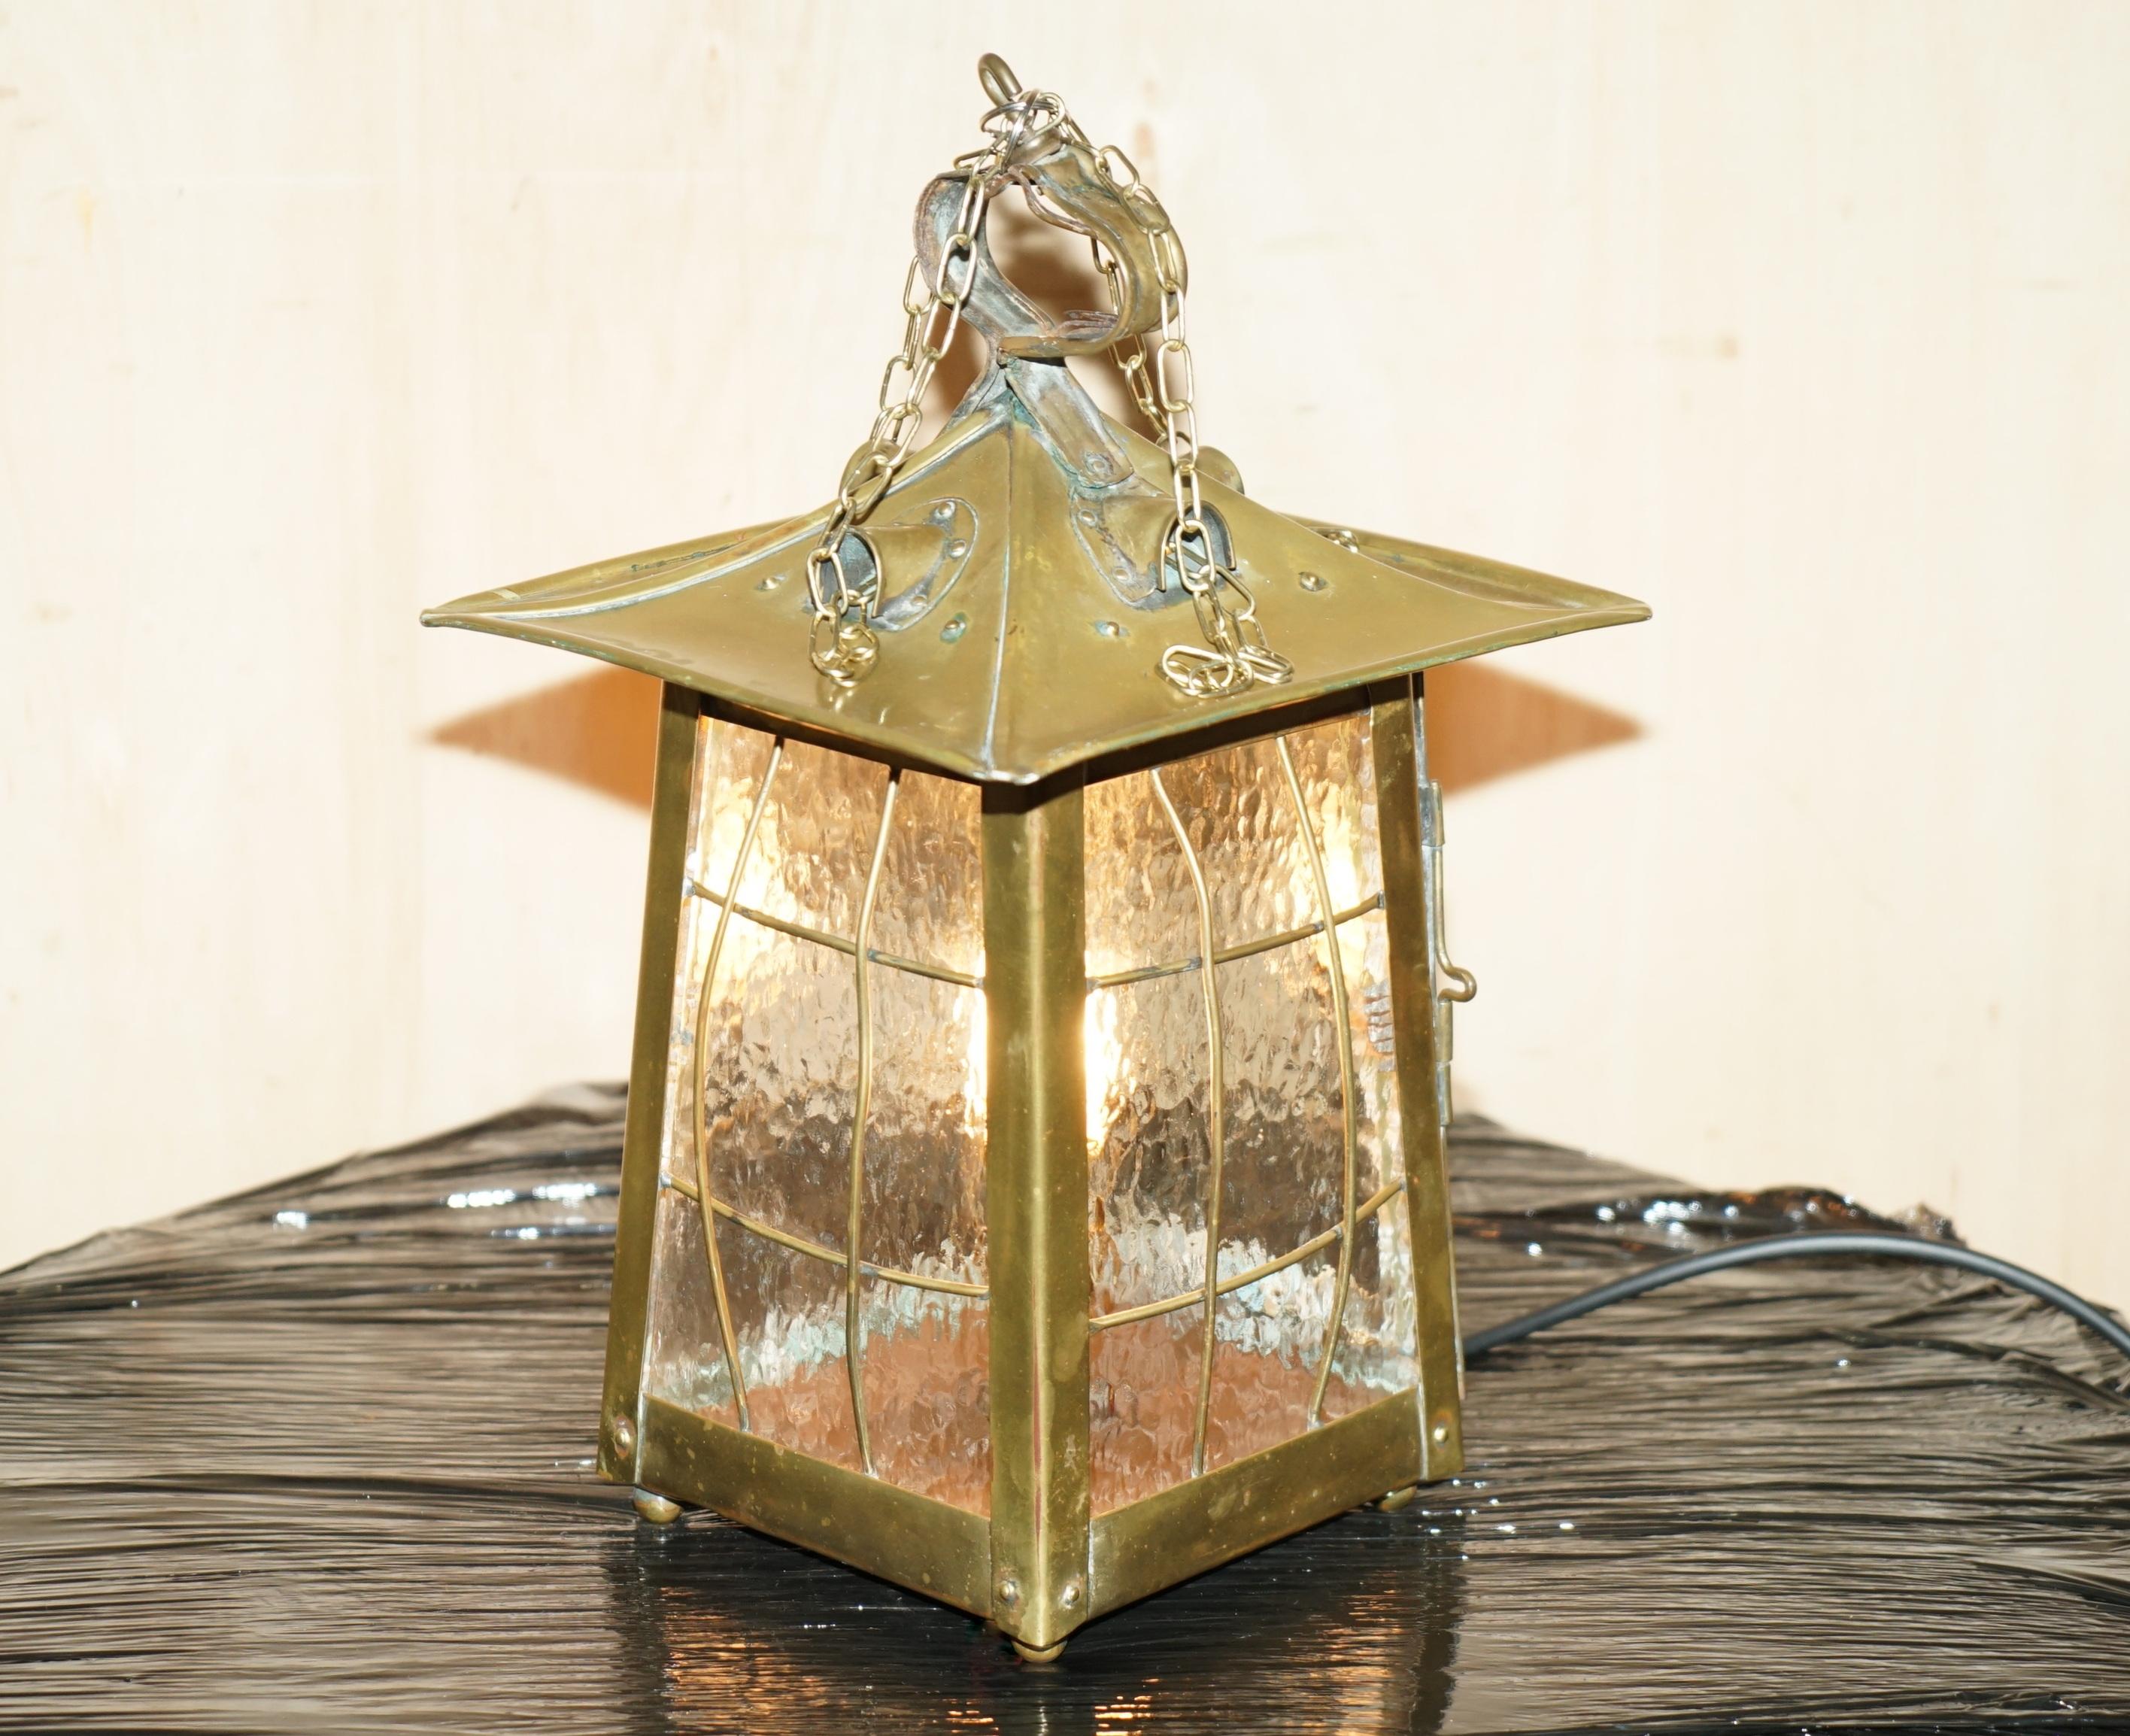 Nous sommes ravis d'offrir à la vente cette superbe lanterne suspendue en laiton d'origine Art Nouveau qui a été restaurée pour être utilisée comme lampe de table

Une très belle lampe bien faite et décorative, elle a été entièrement révisée et